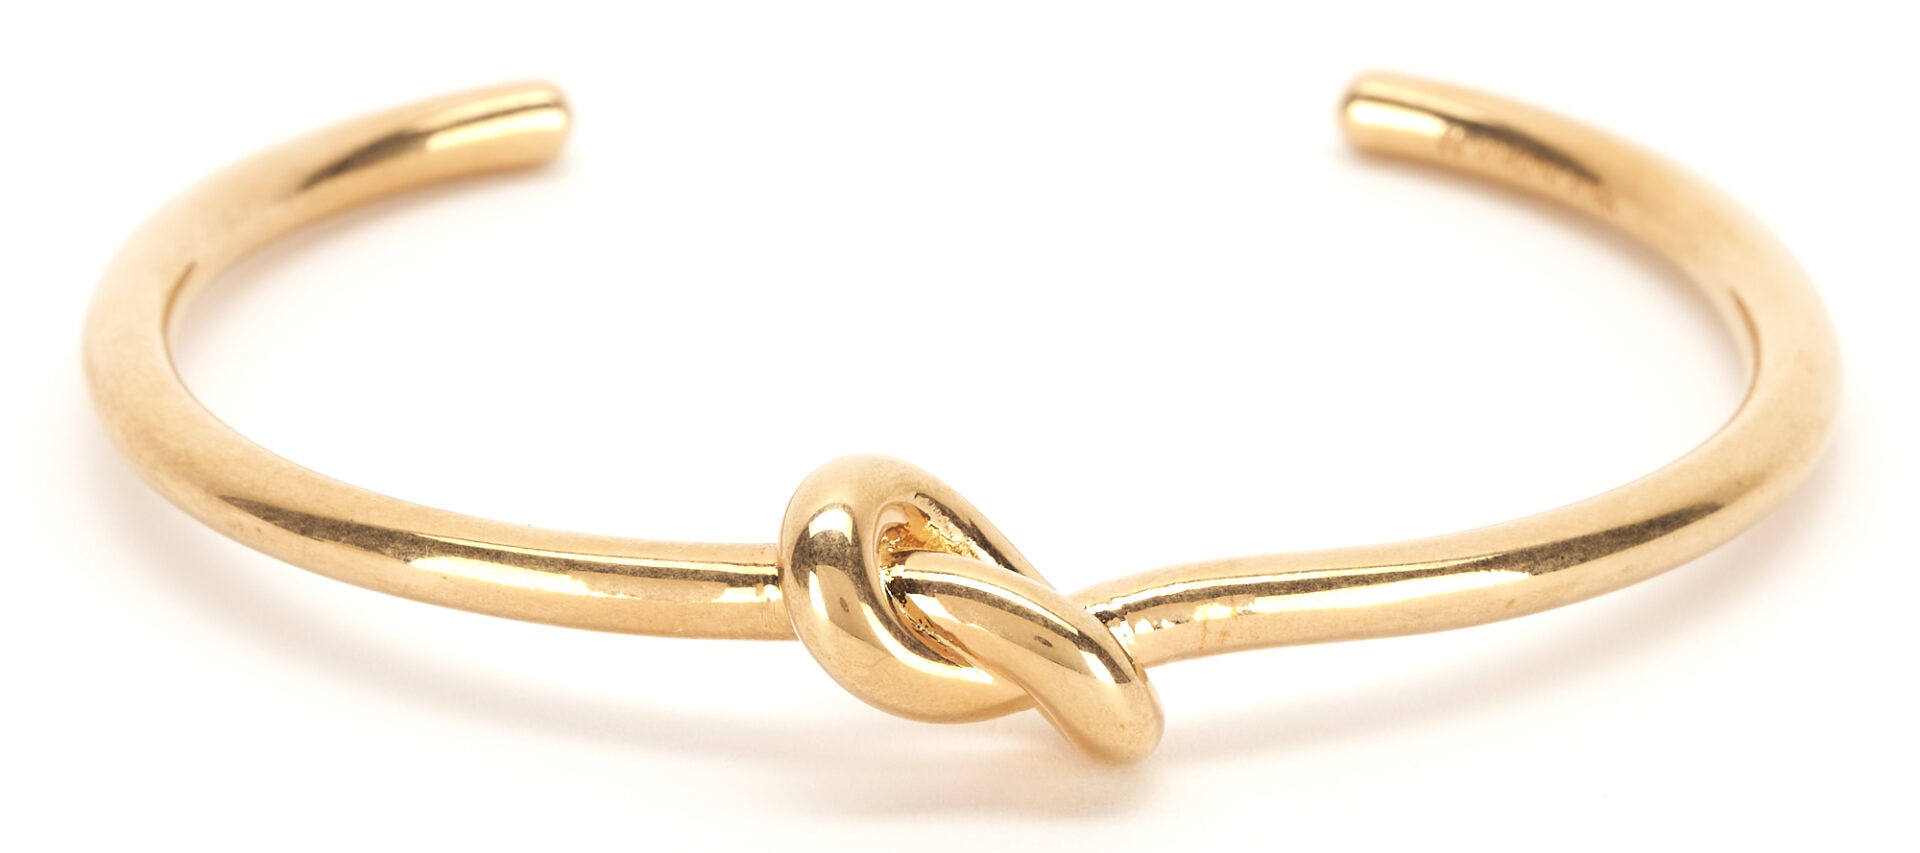 Lot 1206: 4 Celine Paris Accessories, incl. Knot Bracelet, Octagonal Bangle & Sunglasses